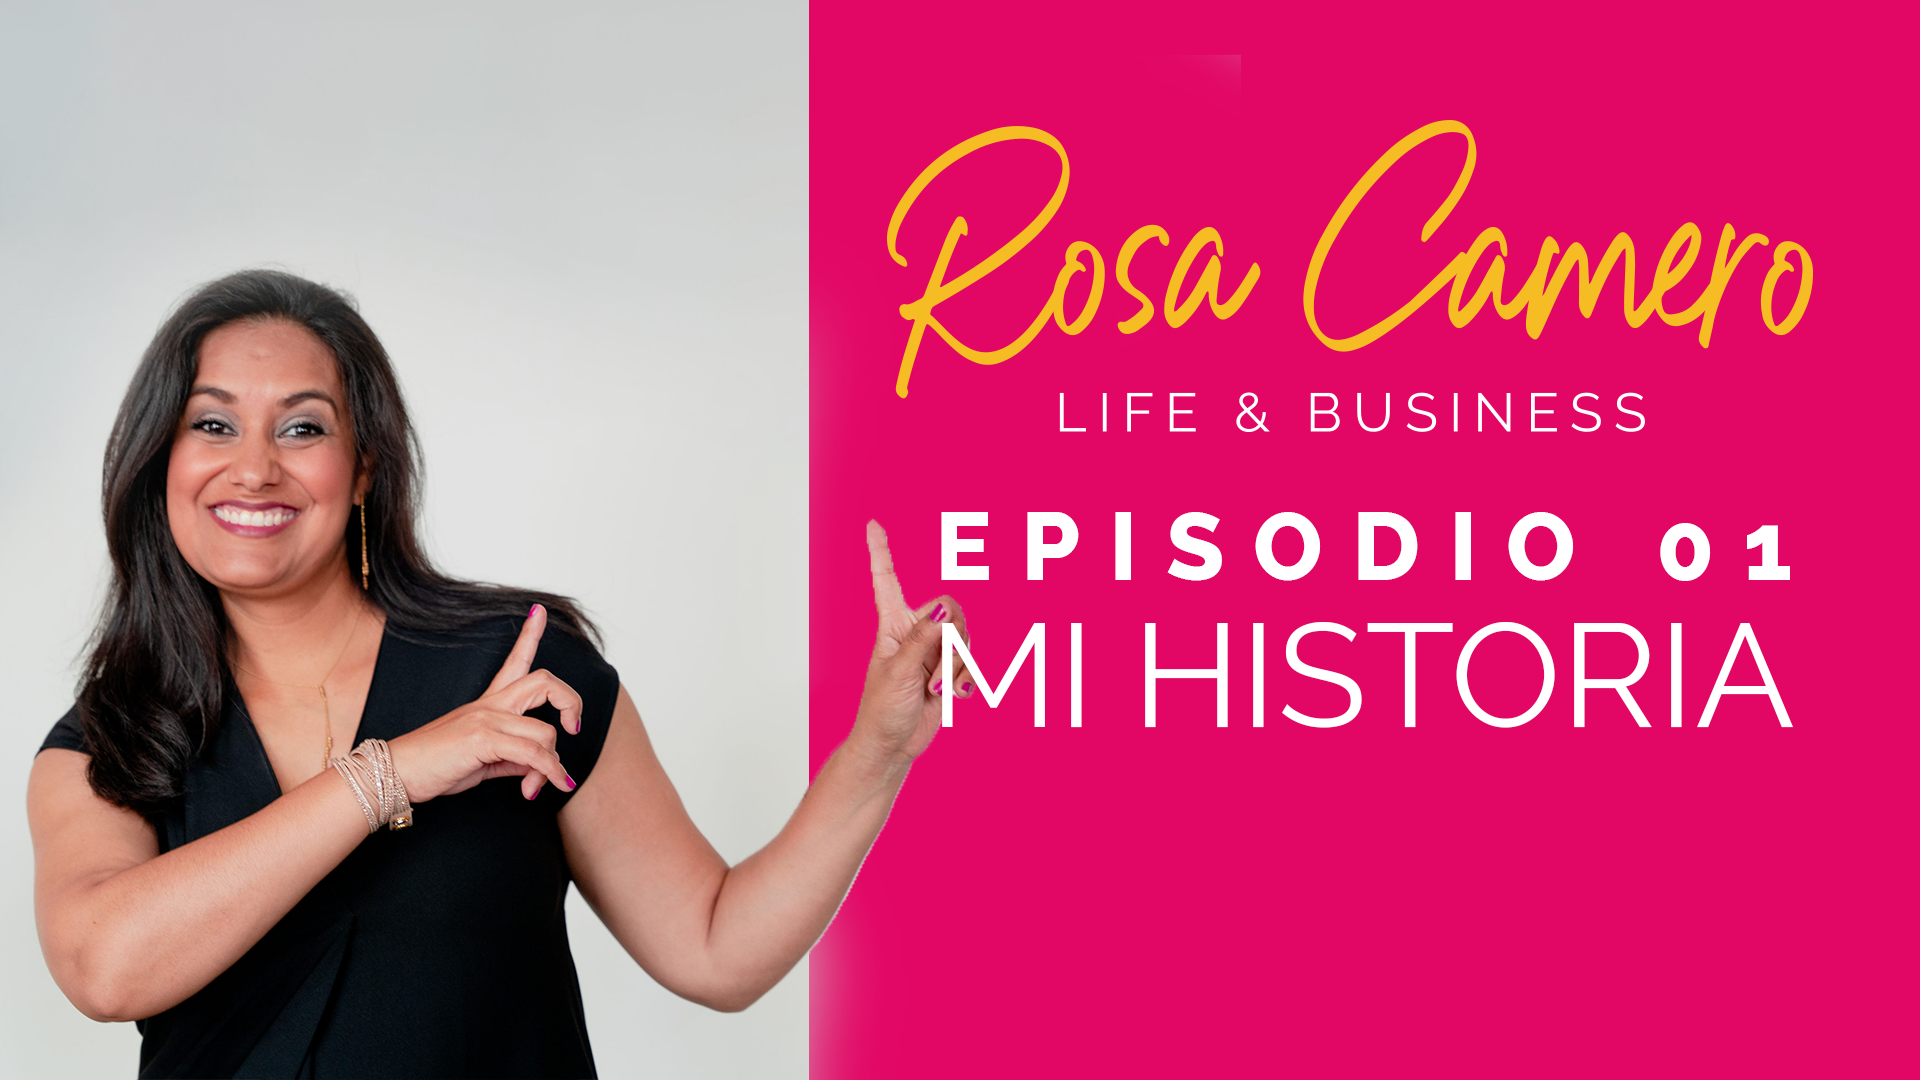 You are currently viewing Life & Business con Rosa Camero Episodio 01: Conoce Mi Historia